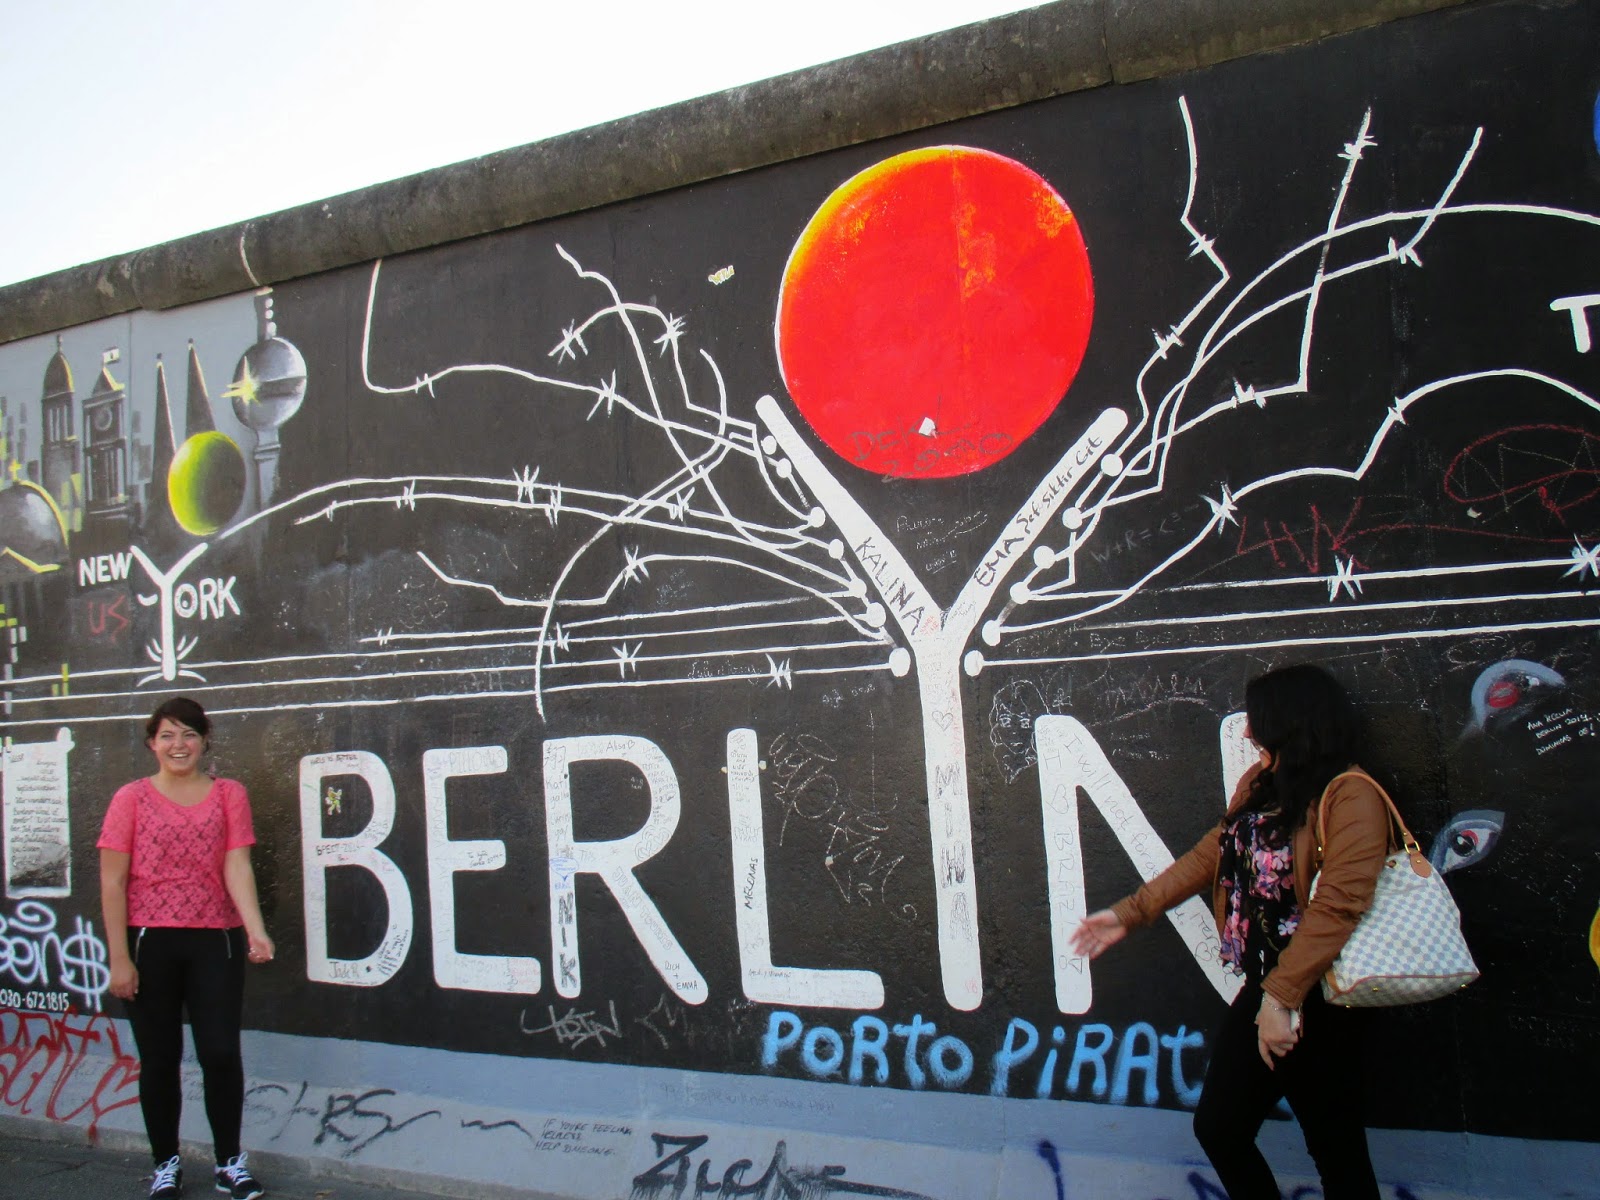 84 Best Berlin Wall Images Berlin Wall Berlin East Germany